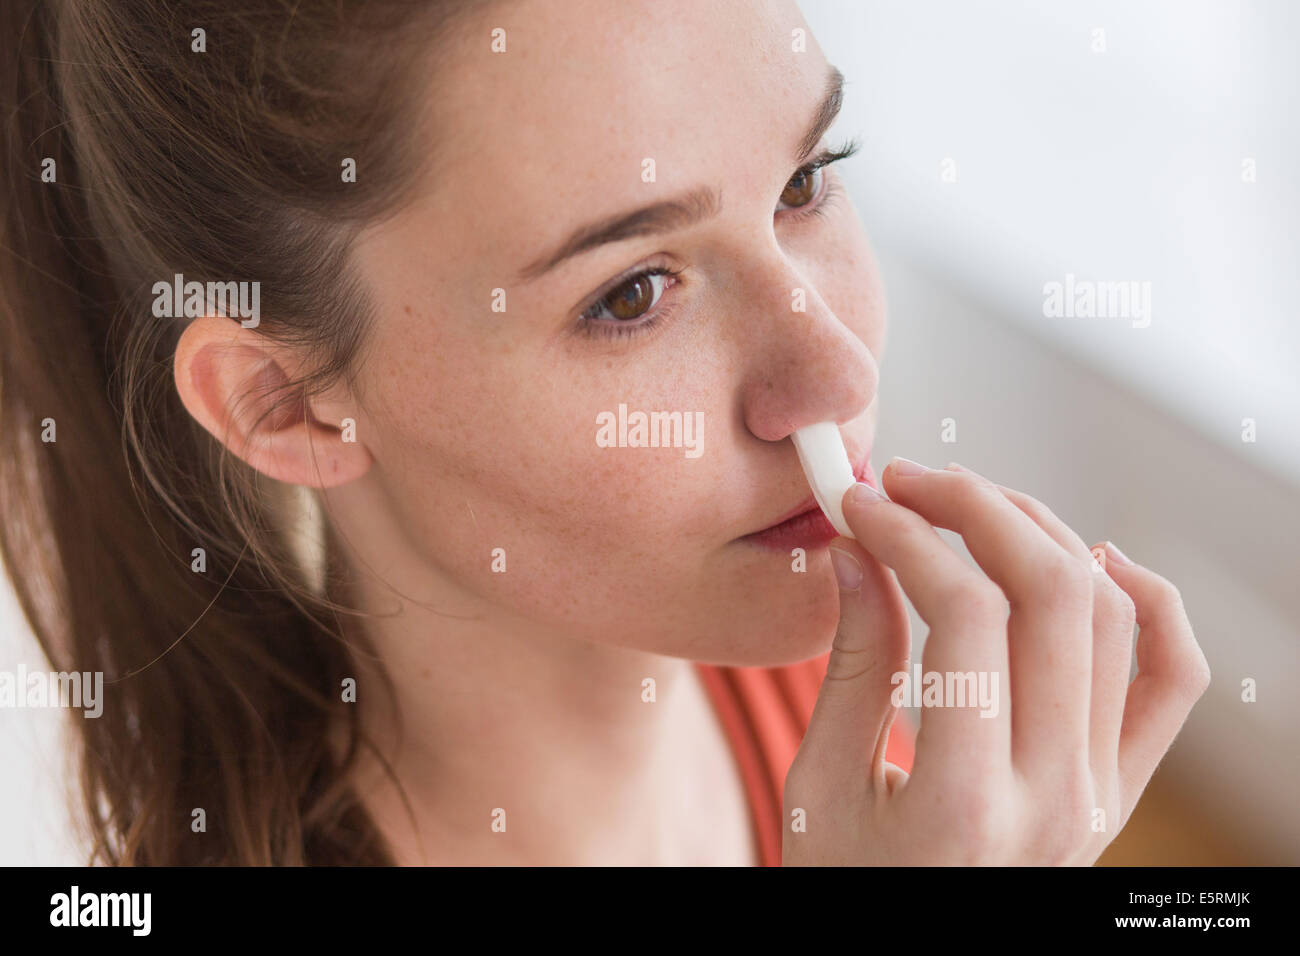 Femme à l'aide d'une gaze stérile imbibé de peroxyde d'hydrogène pour arrêter un saignement de nez. Banque D'Images